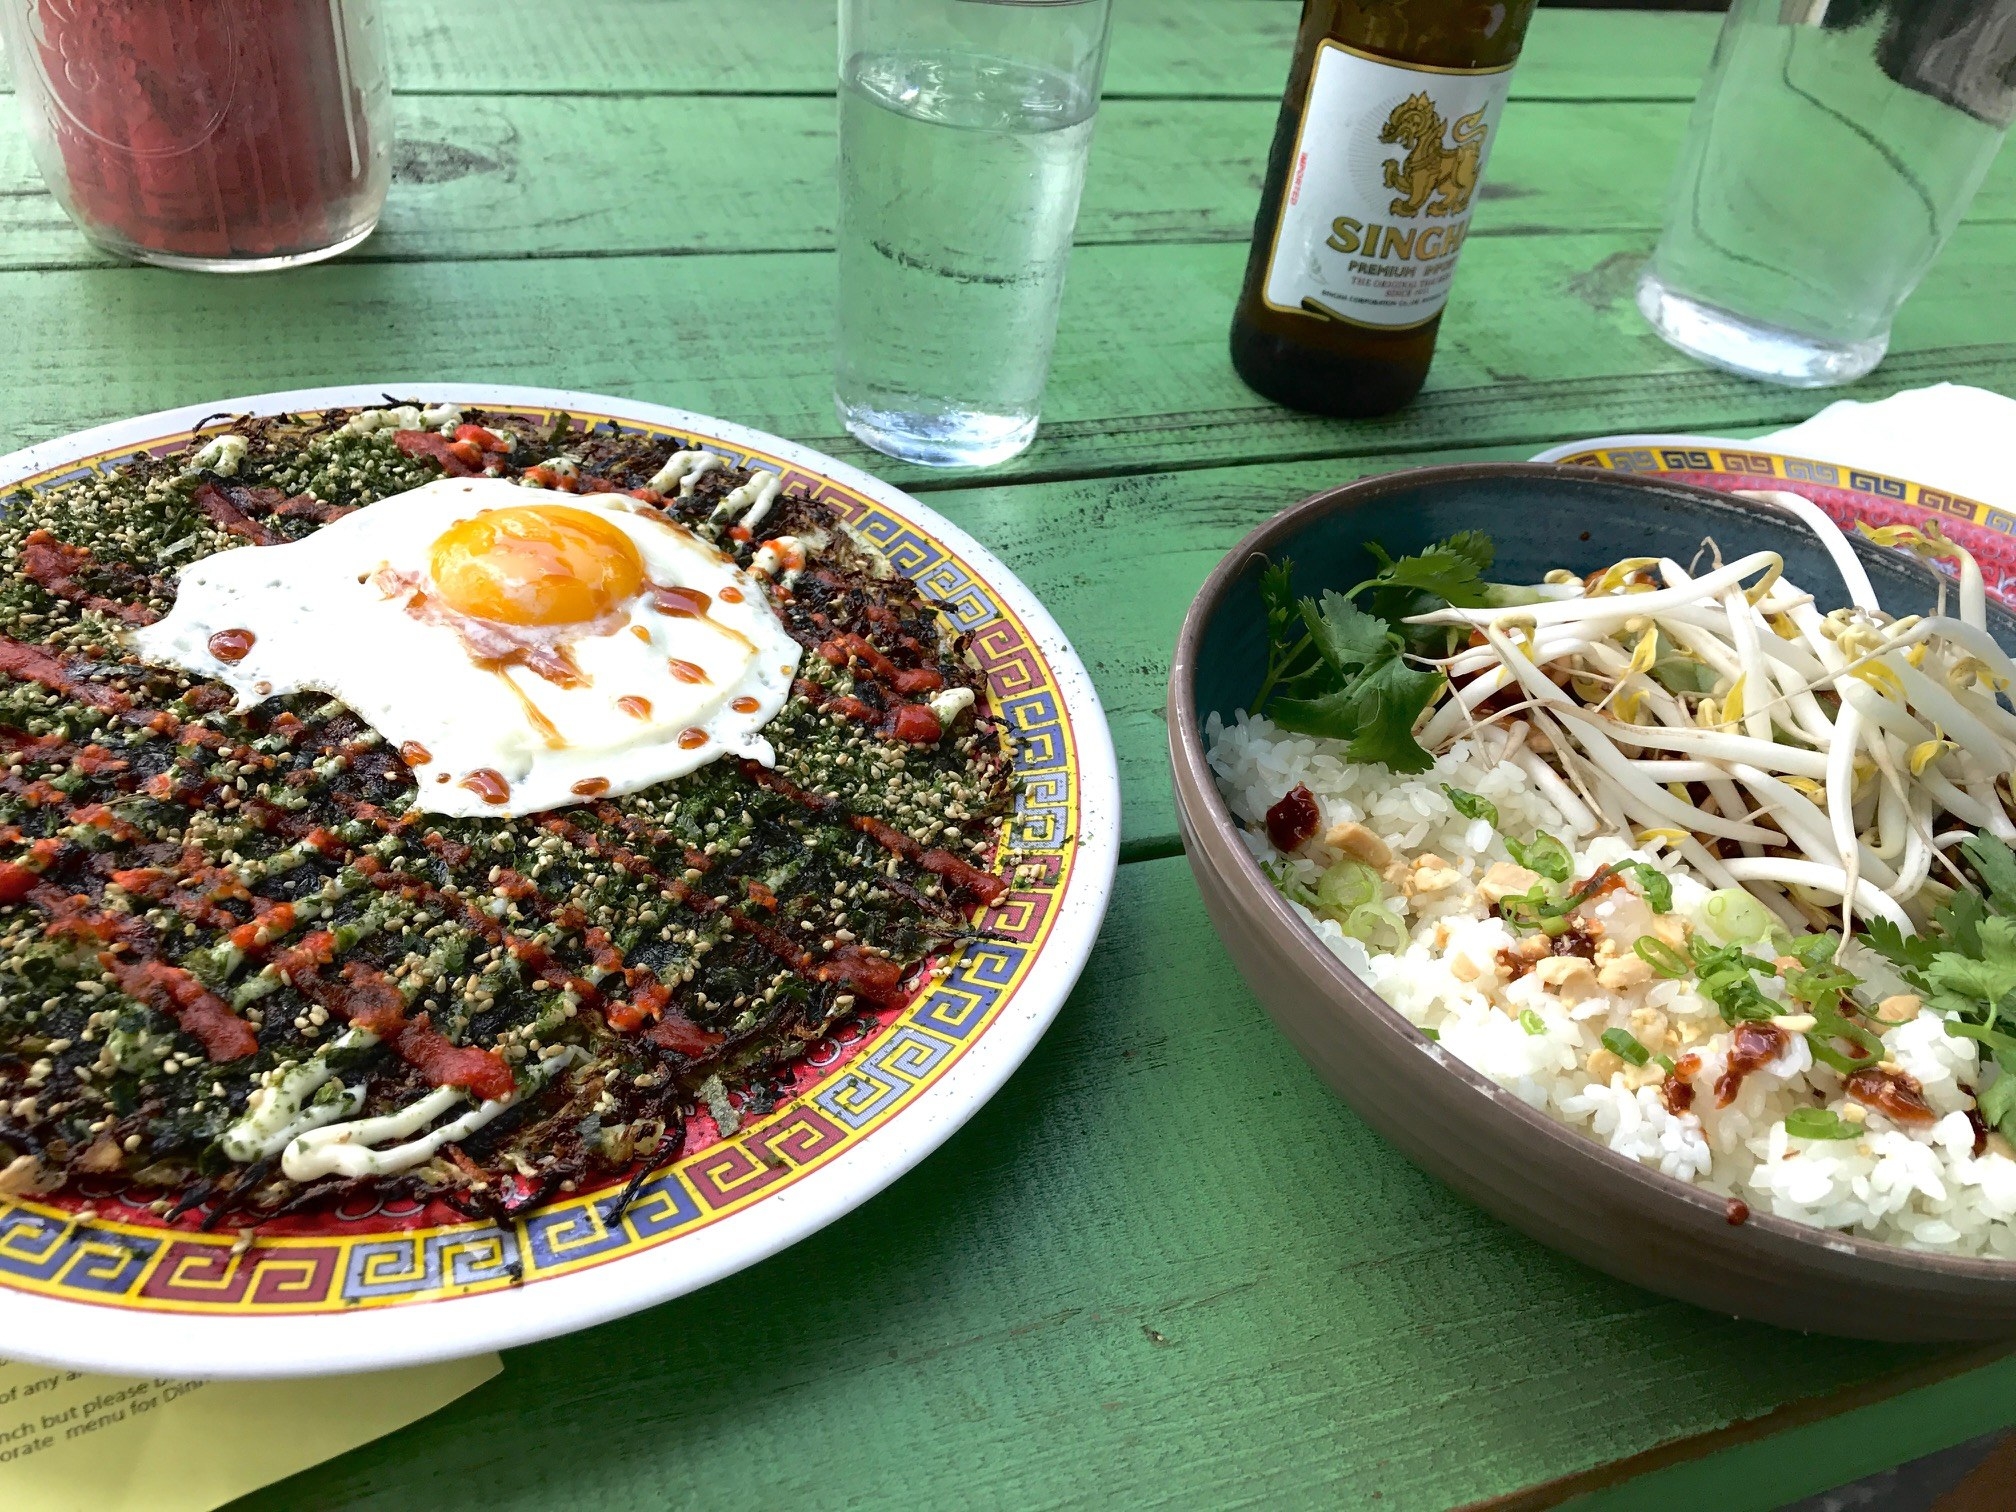 Okonomiyaki and a rice dish